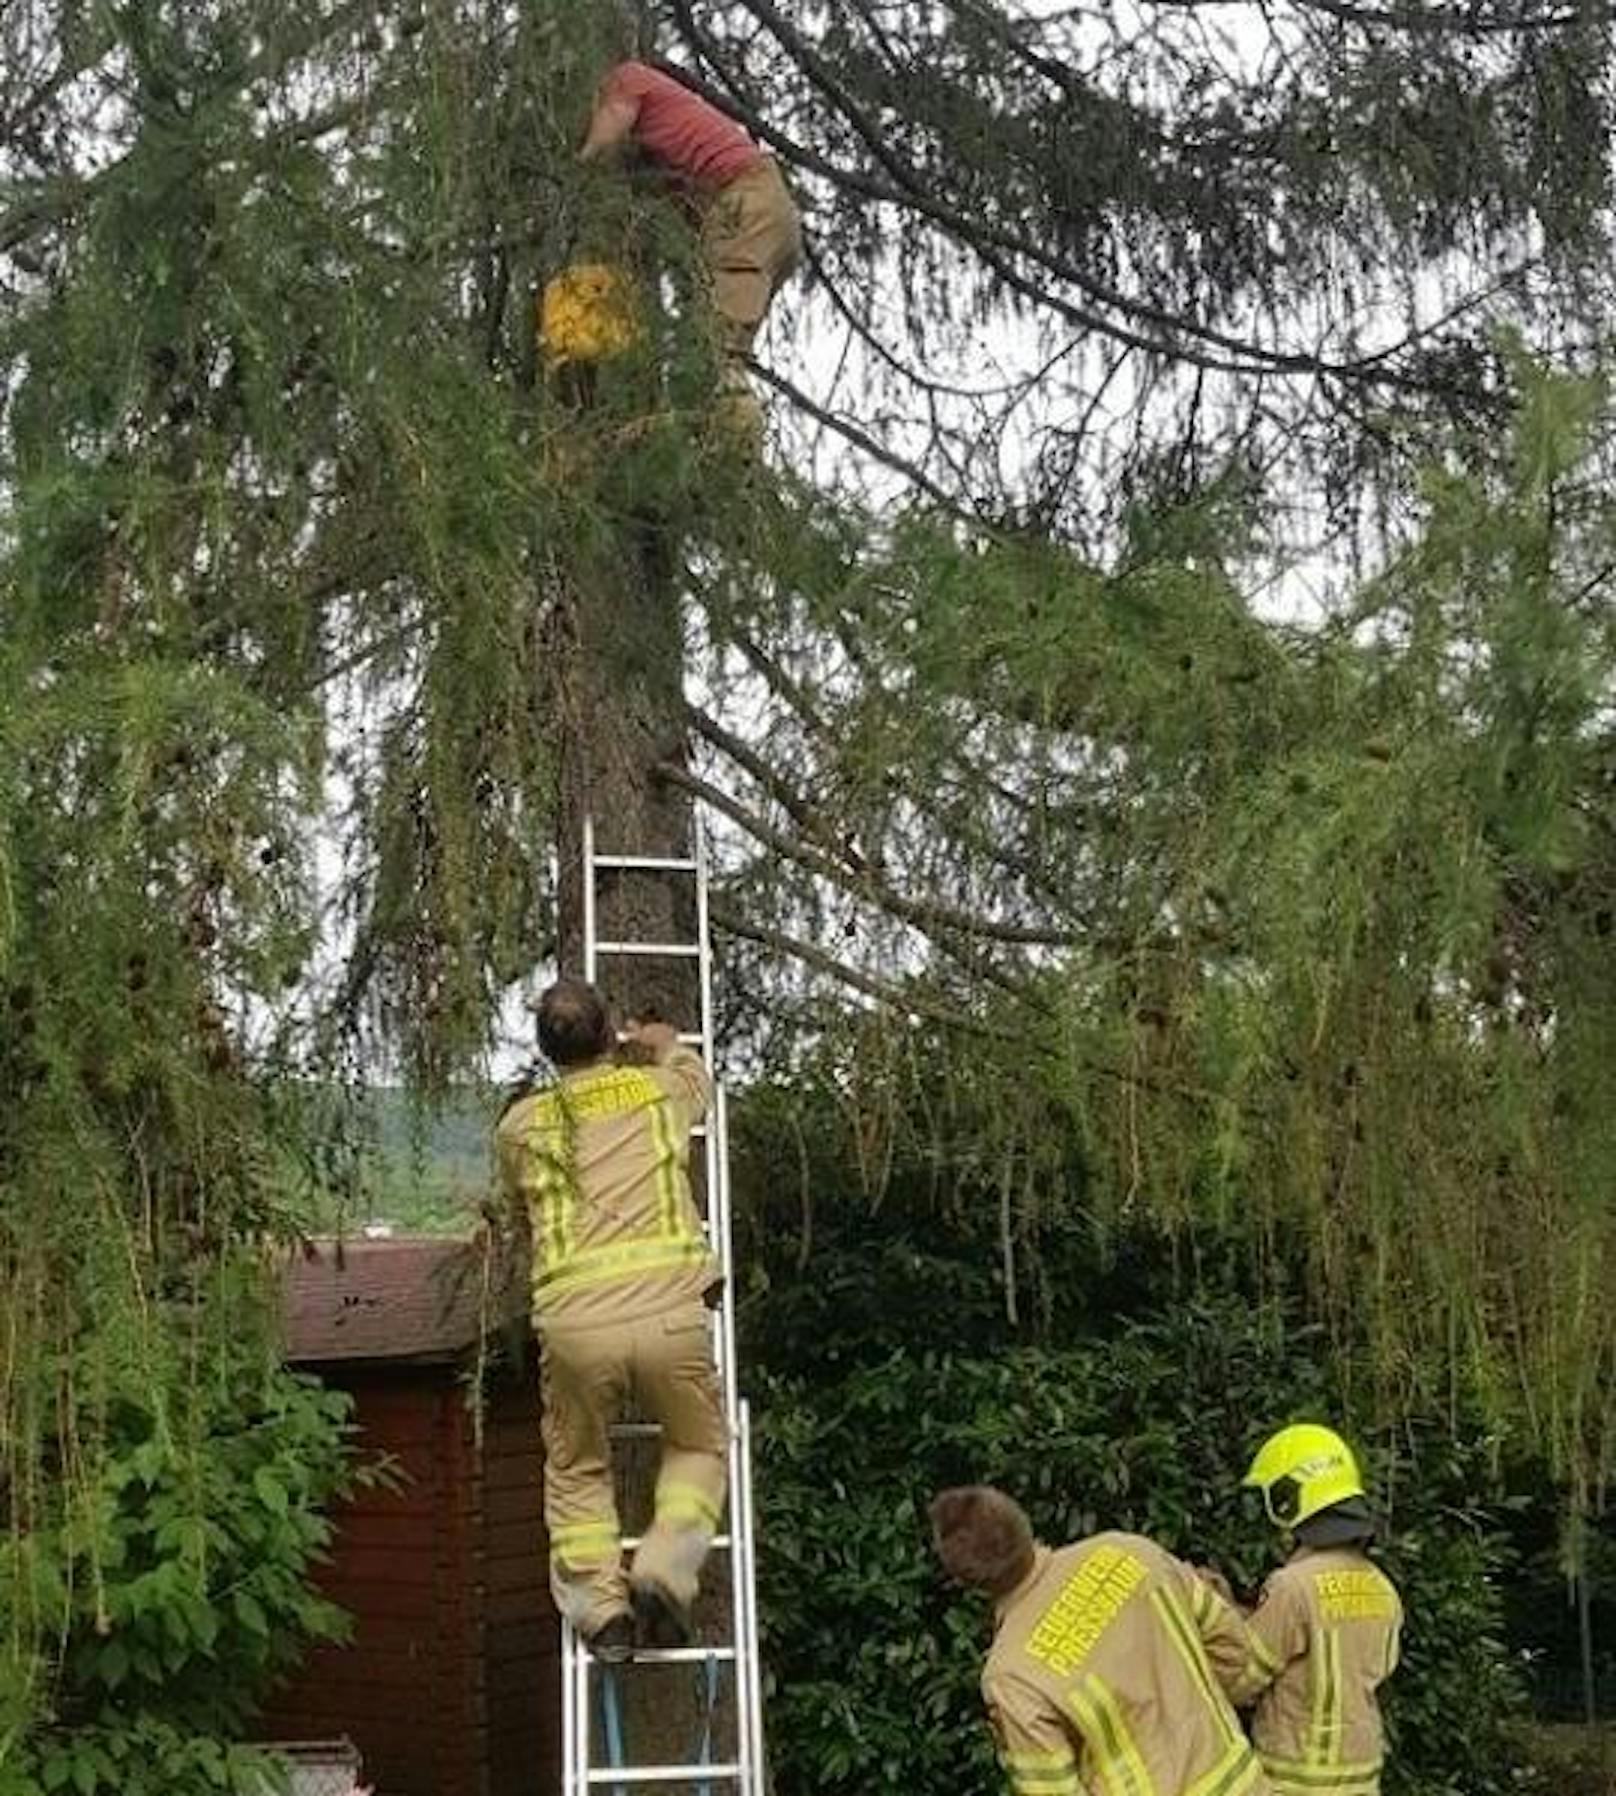 Auf diesen Baum war die Ketze geklettert - Rettung mit Leiter!